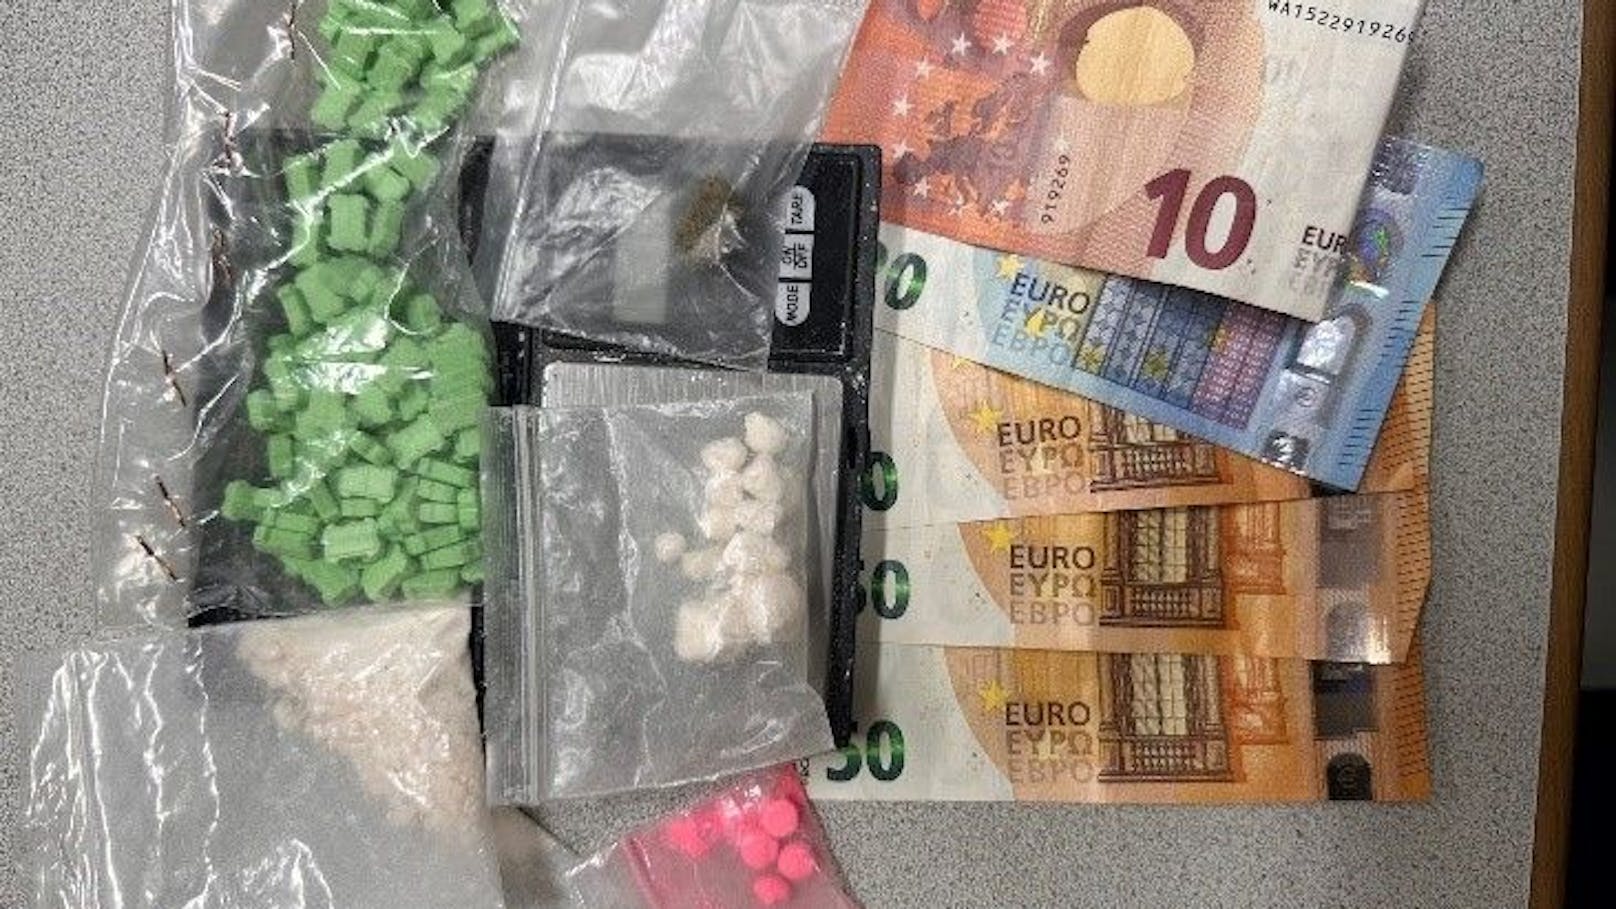 Die Polizei fand 100 Ecstasy-Tabletten, Speed, Cannabis und Bargeld im Auto.